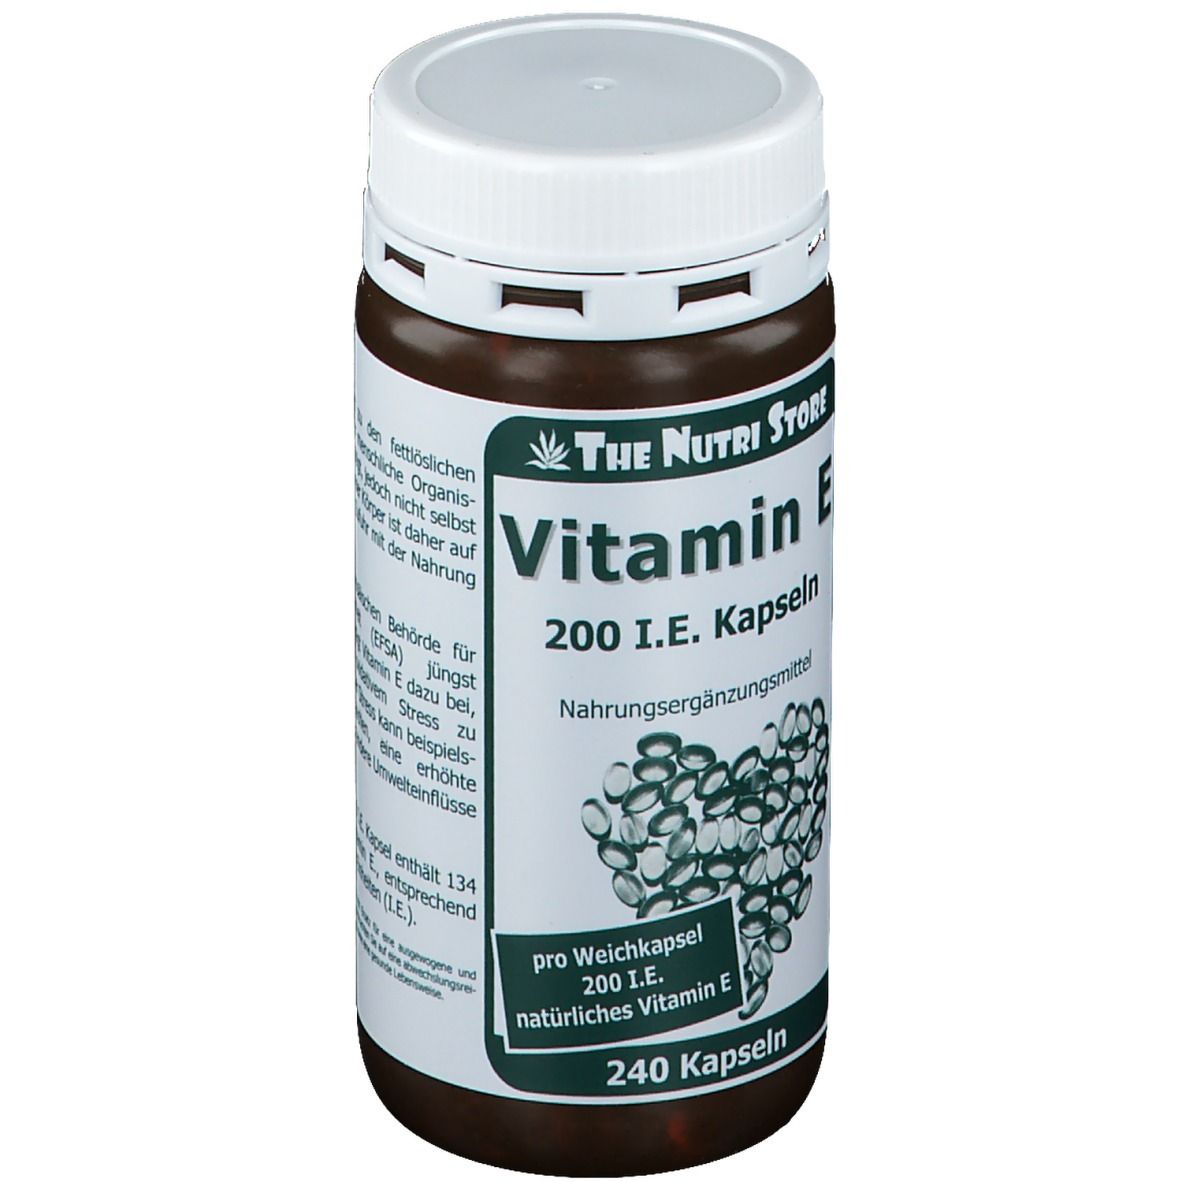 Vitamin E 200 I.E.